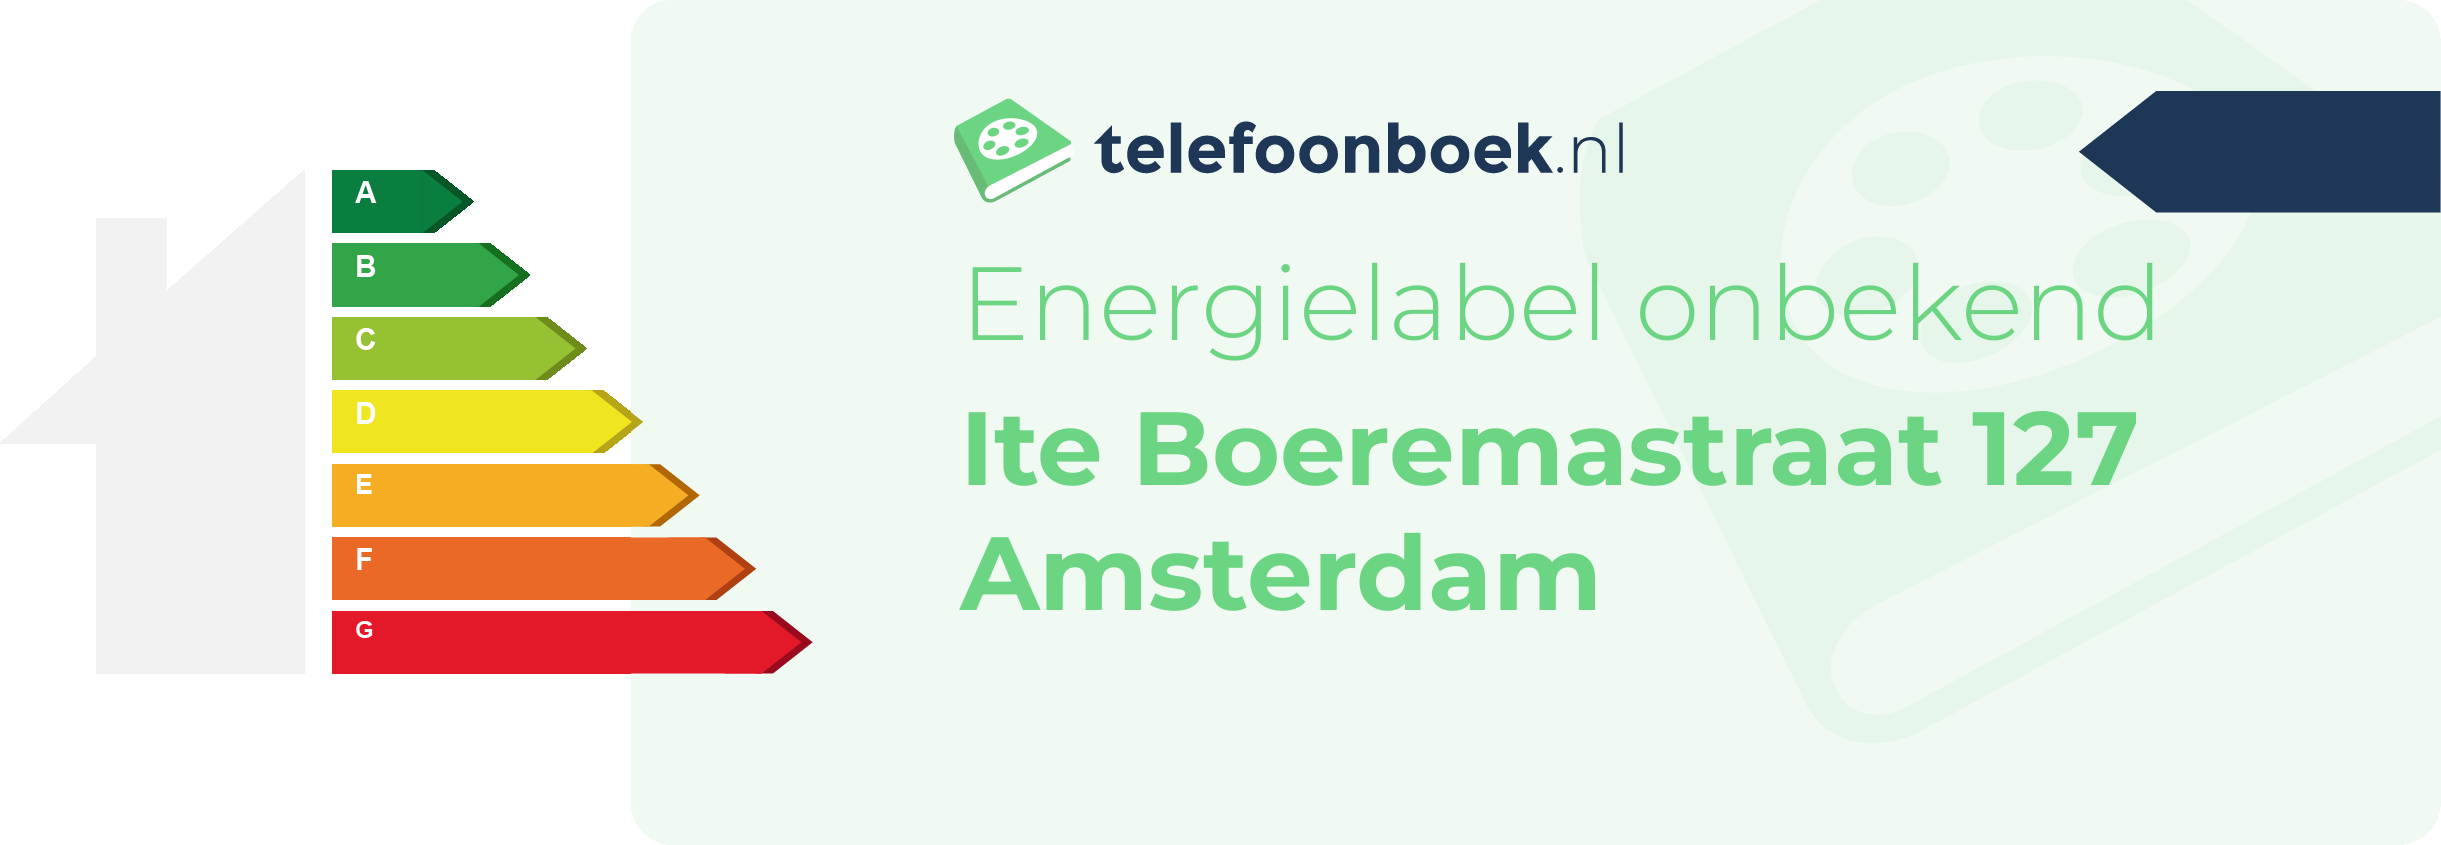 Energielabel Ite Boeremastraat 127 Amsterdam